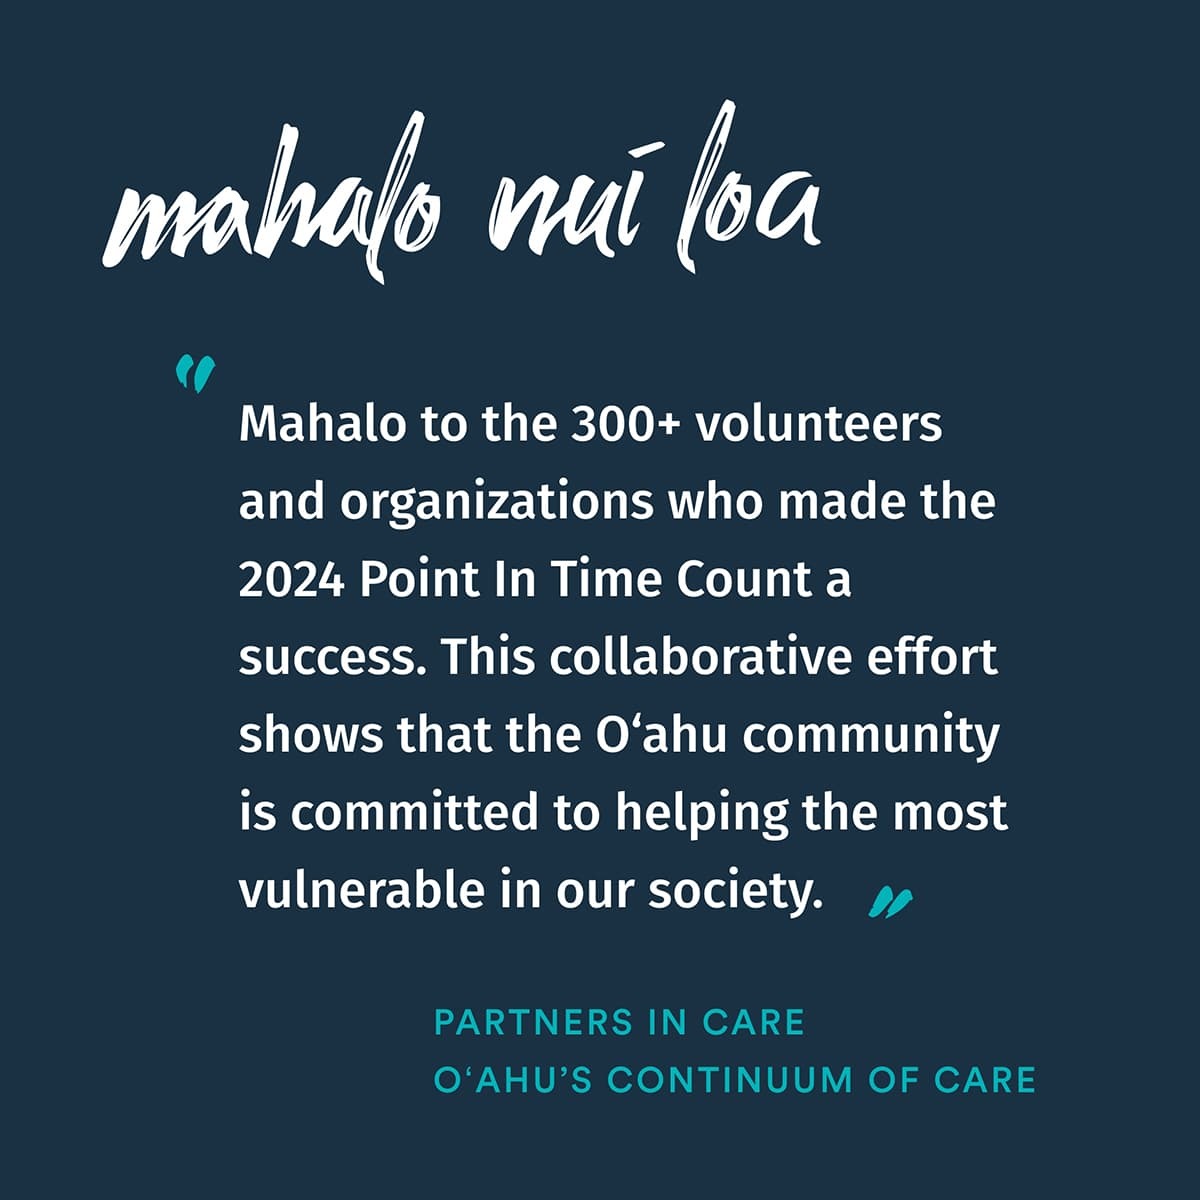 Mahalo Nui Loa to Partners in Care